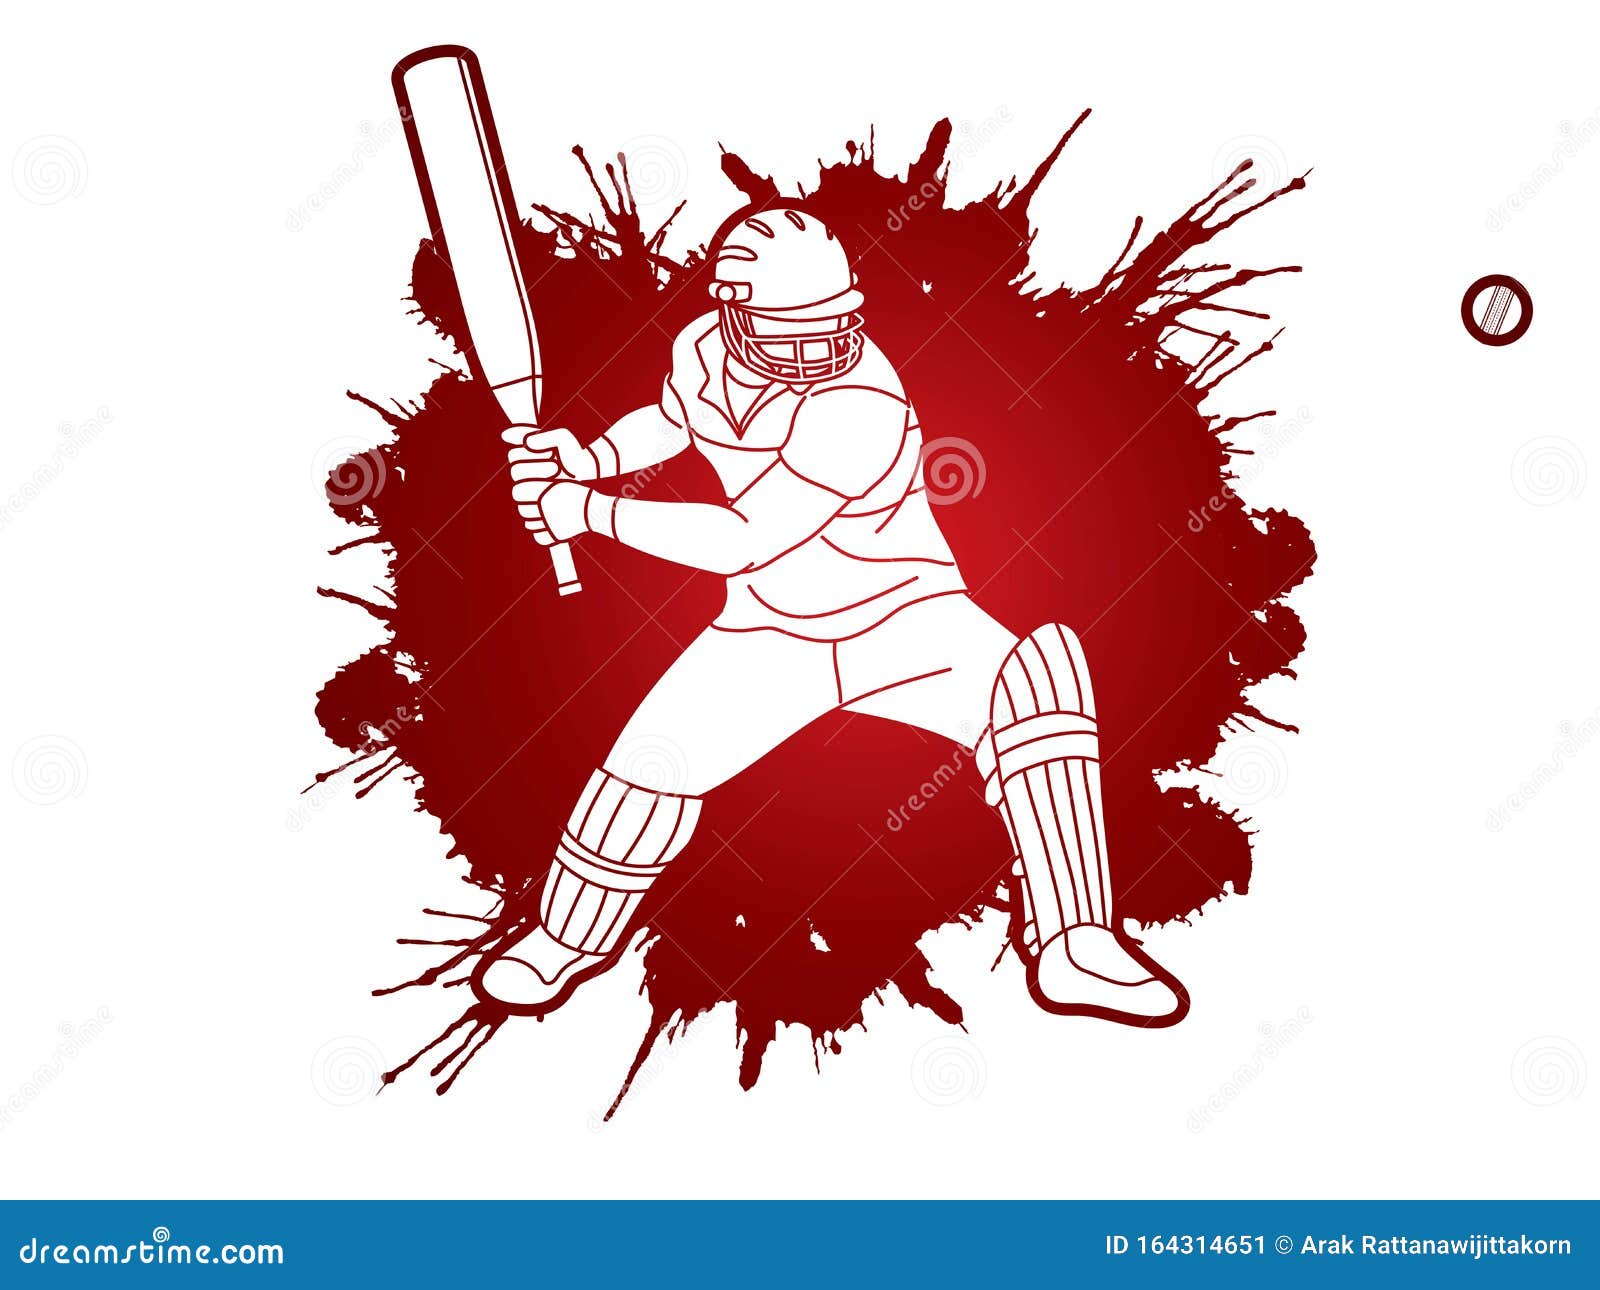 Caricature Daction Du Joueur De Cricket Illustration De Vecteur